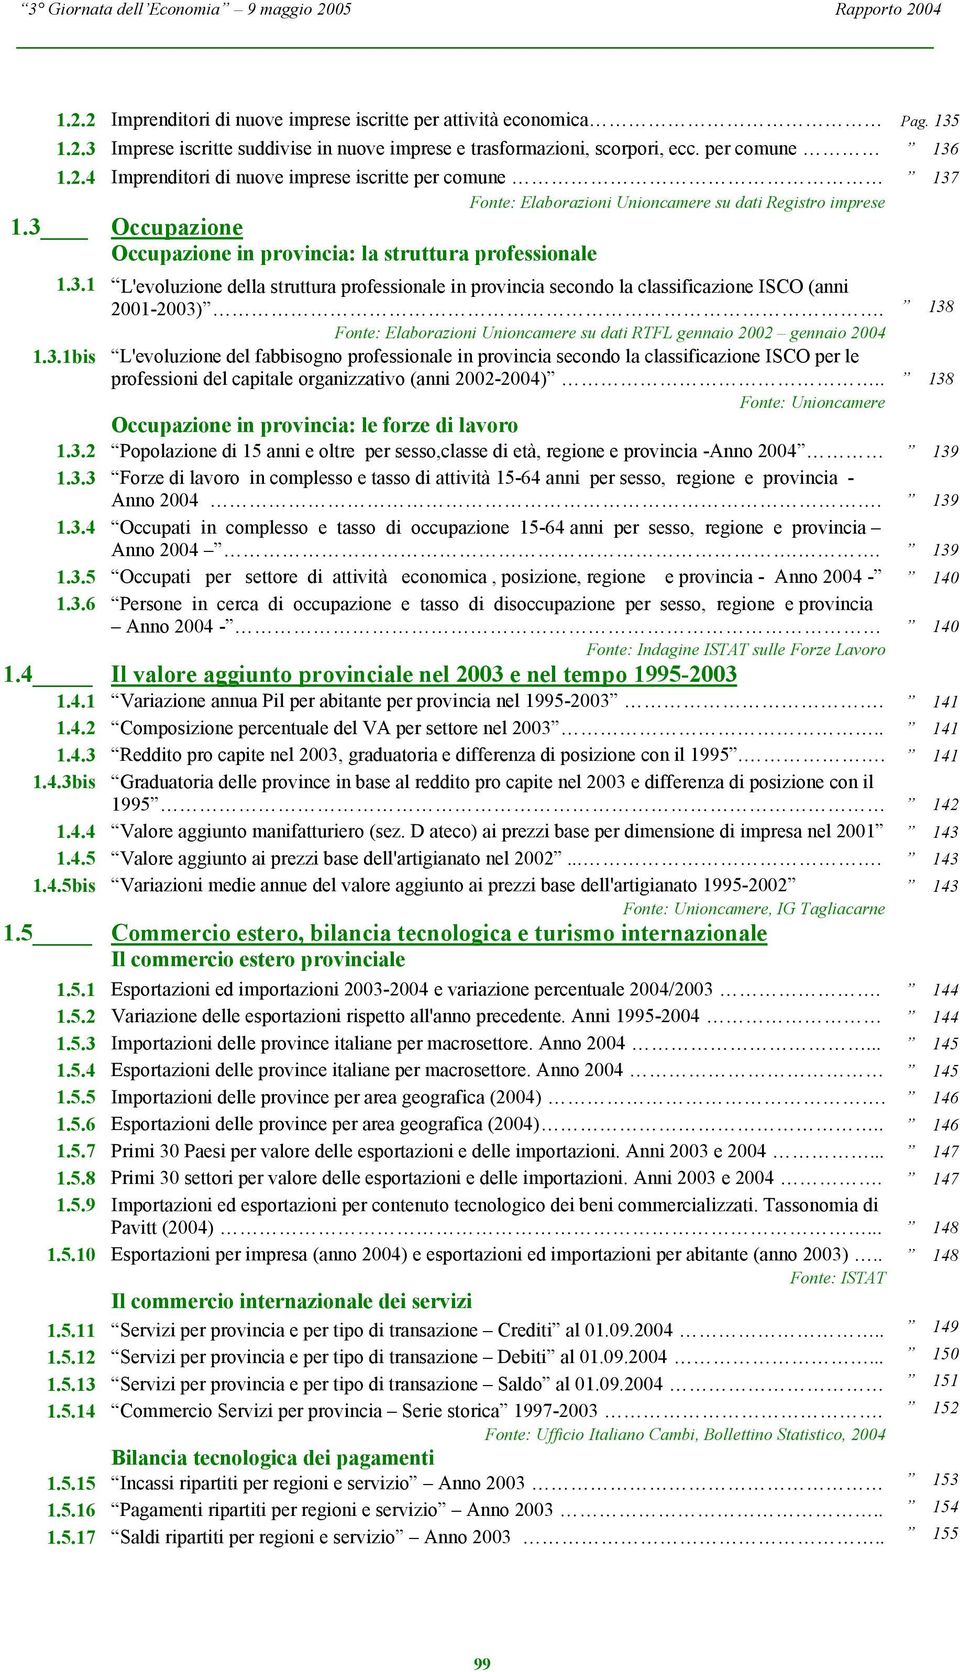 138 Fonte: Elaborazioni Unioncamere su dati RTFL gennaio 2002 gennaio 2004 1.3.1bis L'evoluzione del fabbisogno professionale in provincia secondo la classificazione ISCO per le professioni del capitale organizzativo (anni 2002-2004).